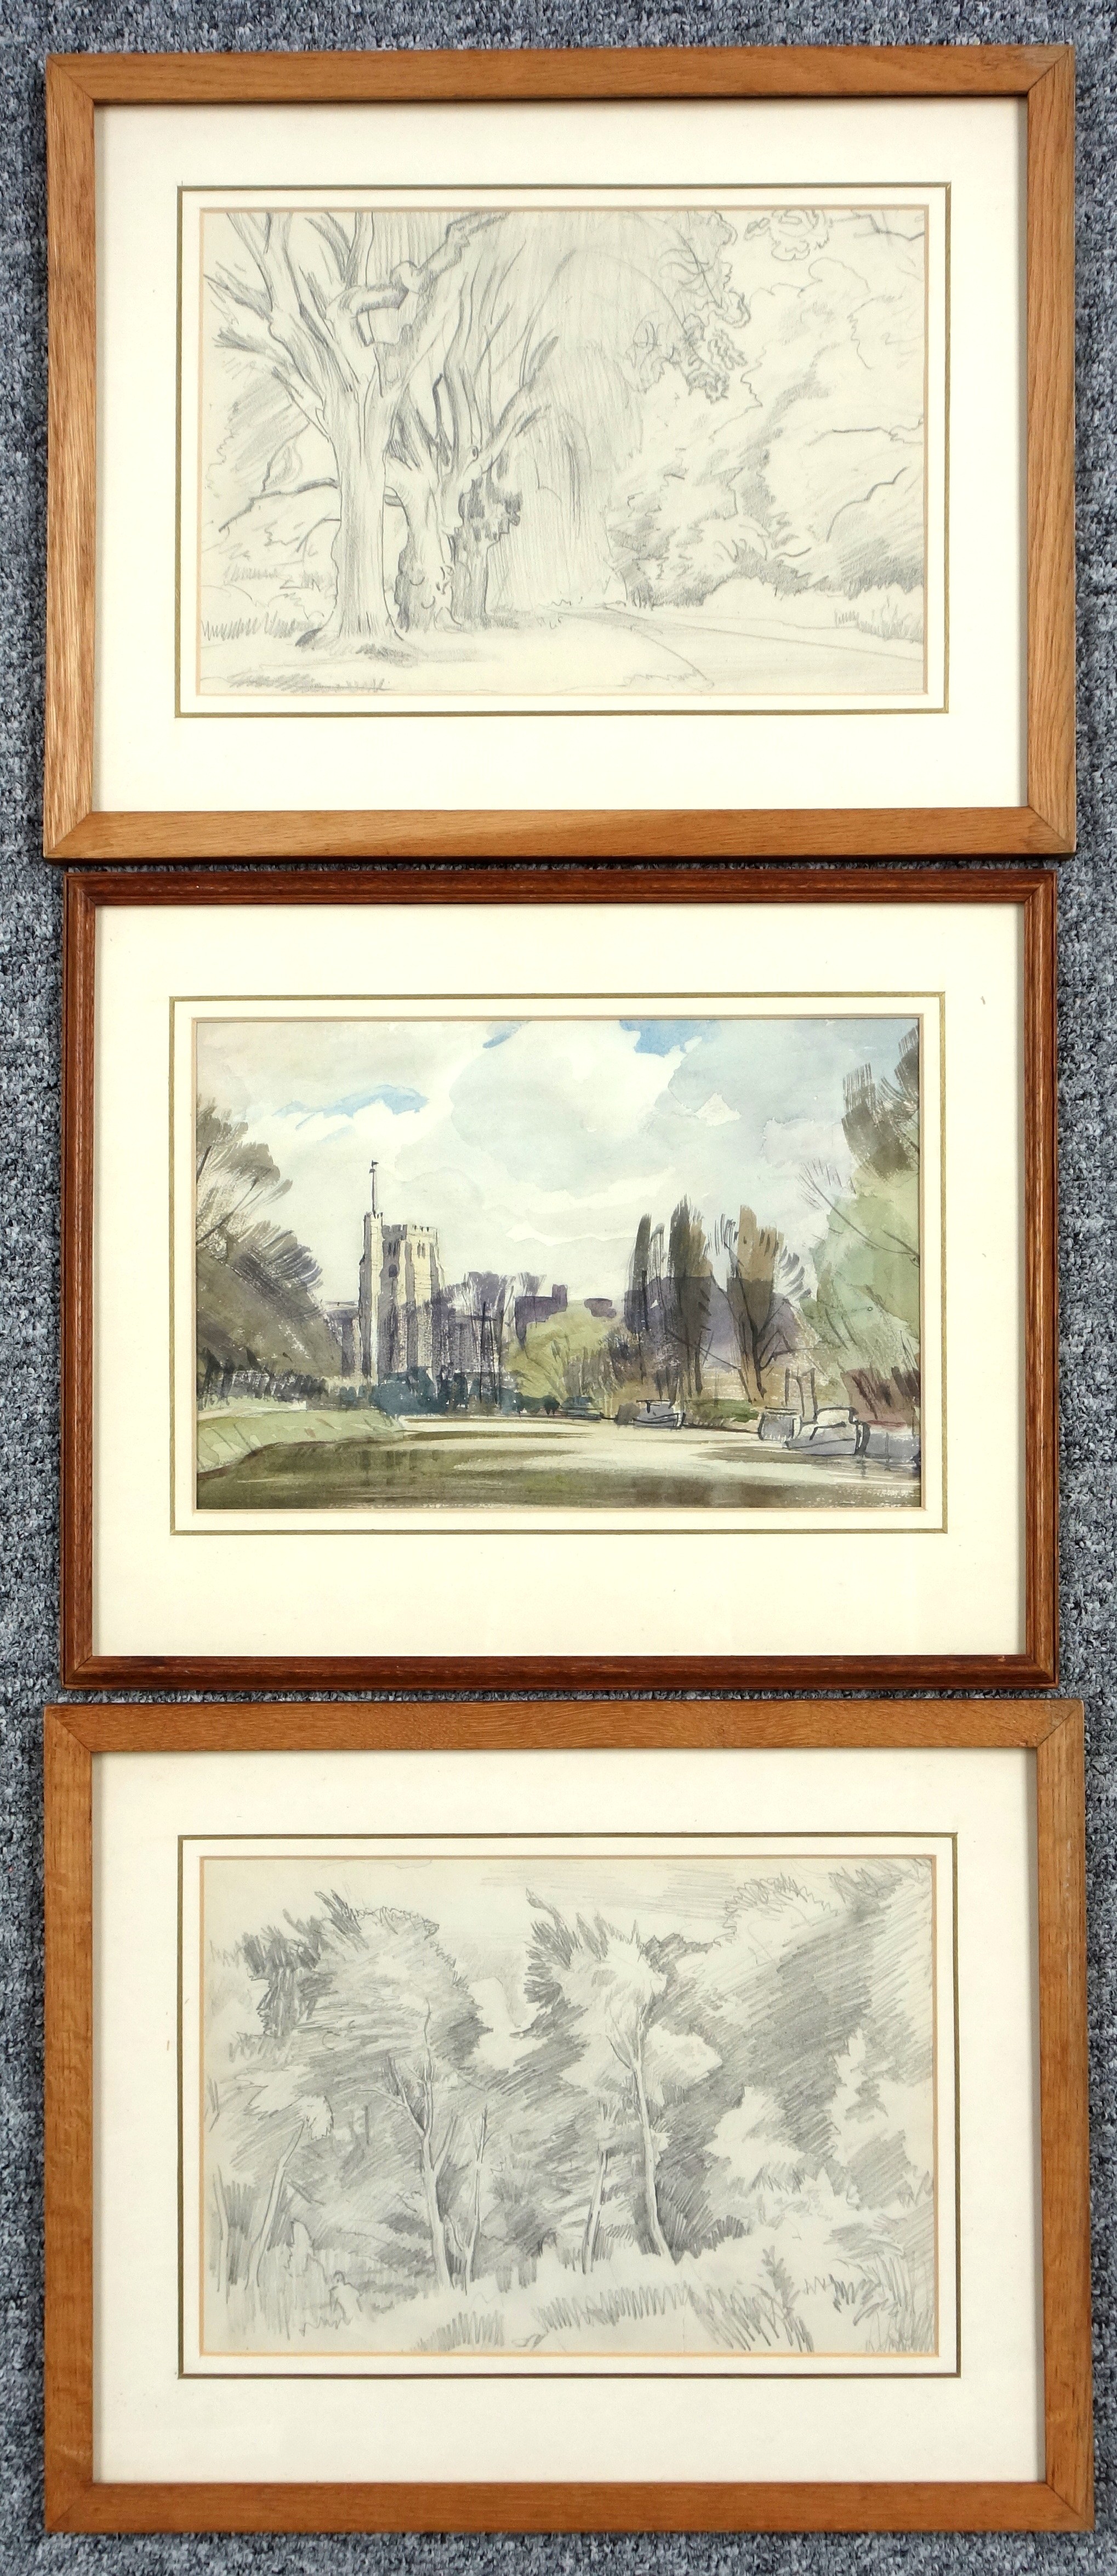 Cedric Kennedy (1898-1968), All Saints Church, Maidstone, Kent, watercolour, 19.9 x 29.3cm; "Trees